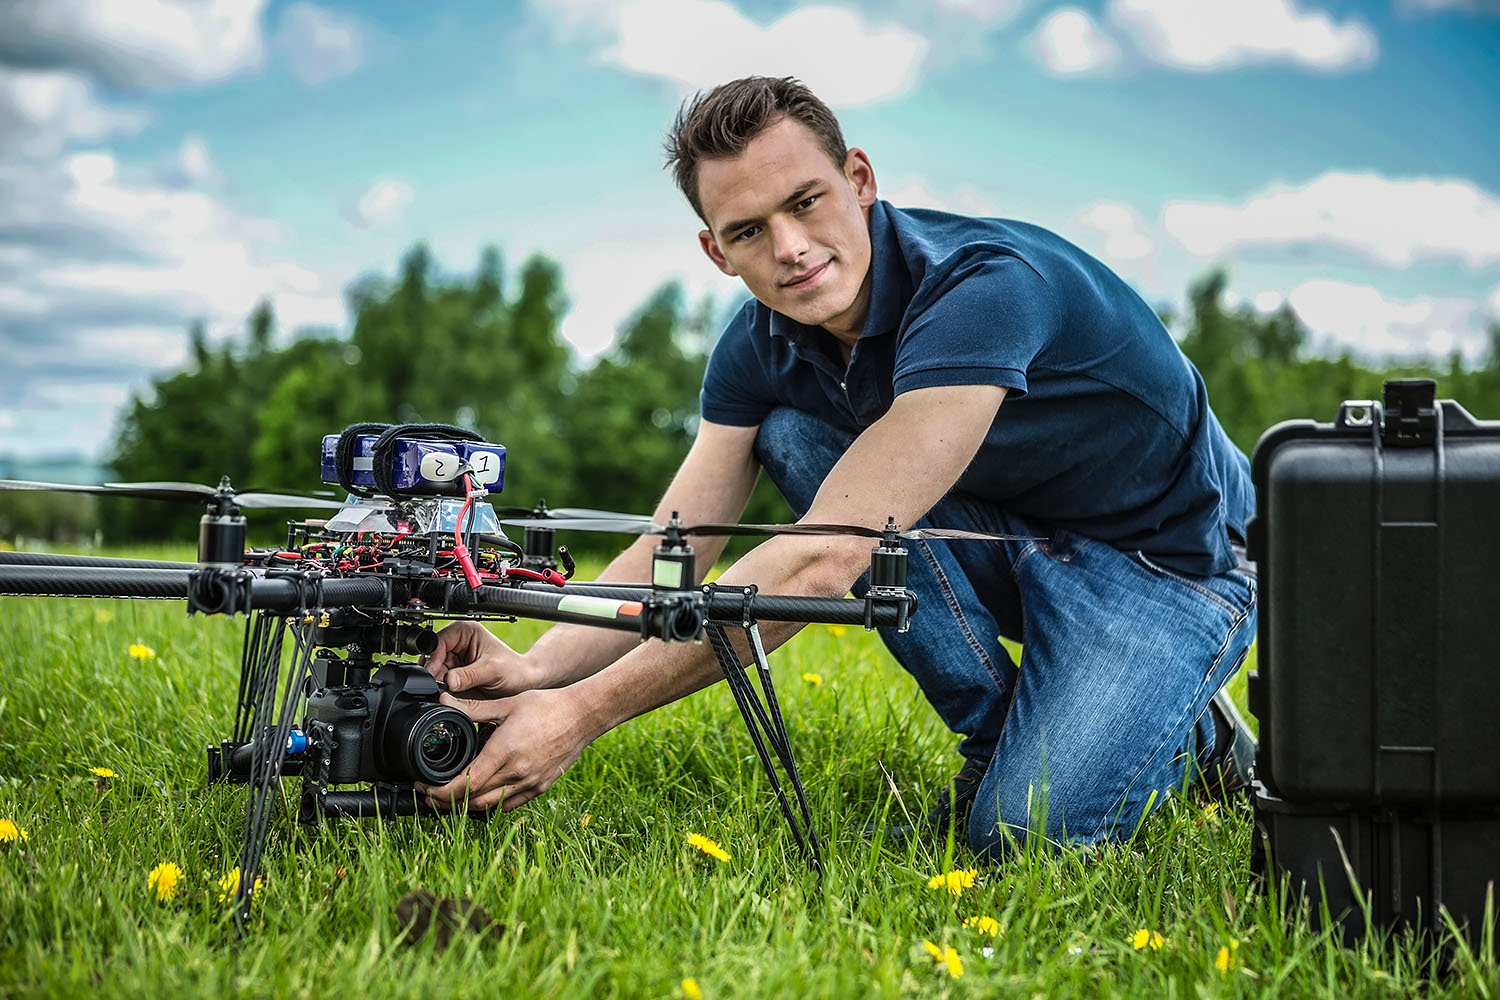 Zajęcia z praktycznym wykorzystaniem dronów to część programu studiów geoinformatyki na UAM w PIle. Fot. Chroma Stock